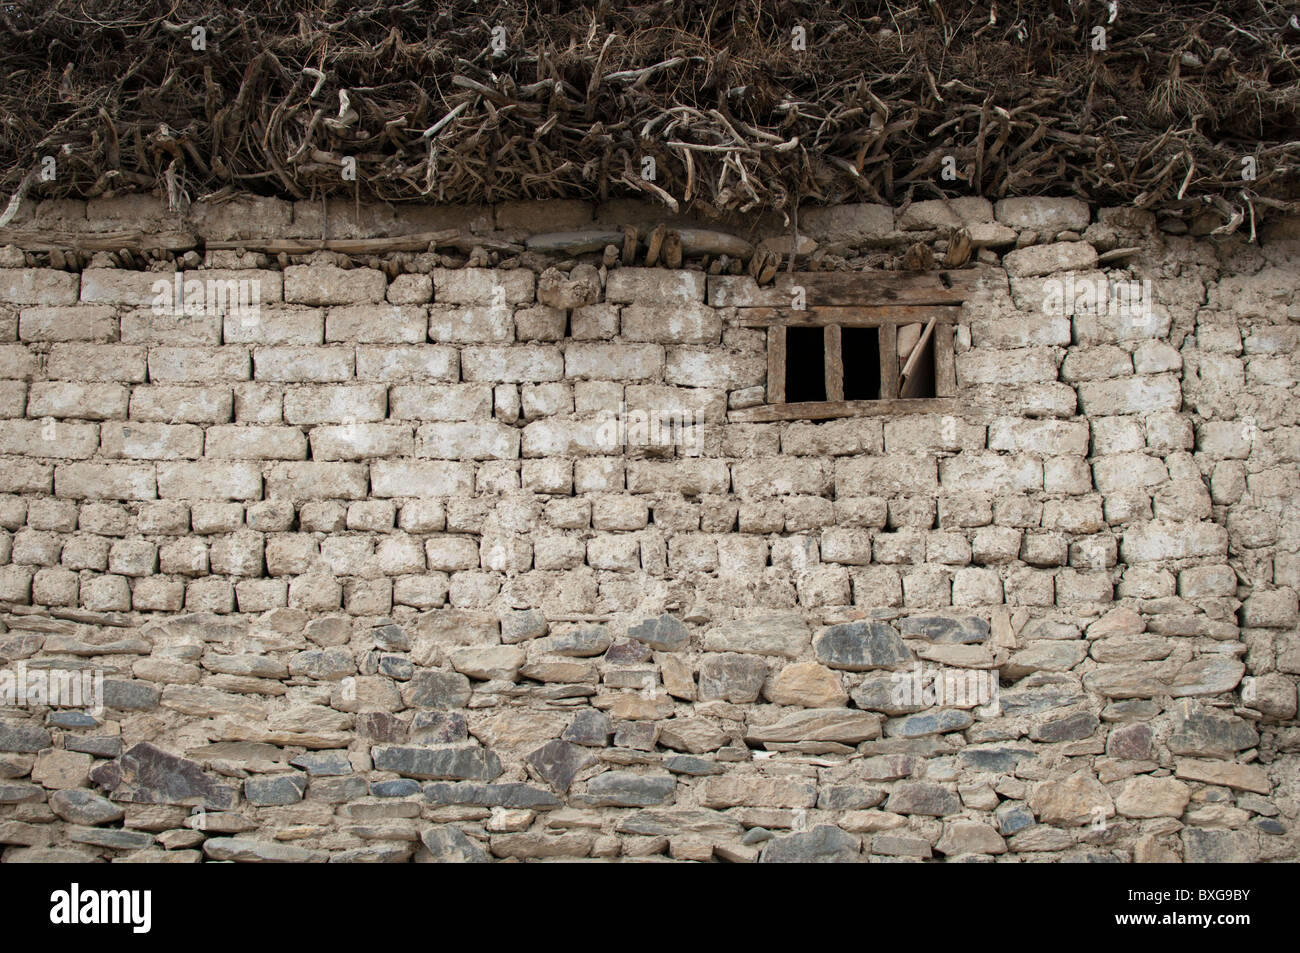 Ein Steinhaus im Inneren Himalaya in Indien. Einheimische im Sommer Feuerholz zu sammeln und speichern es oberhalb des Hauses für den langen winter Stockfoto